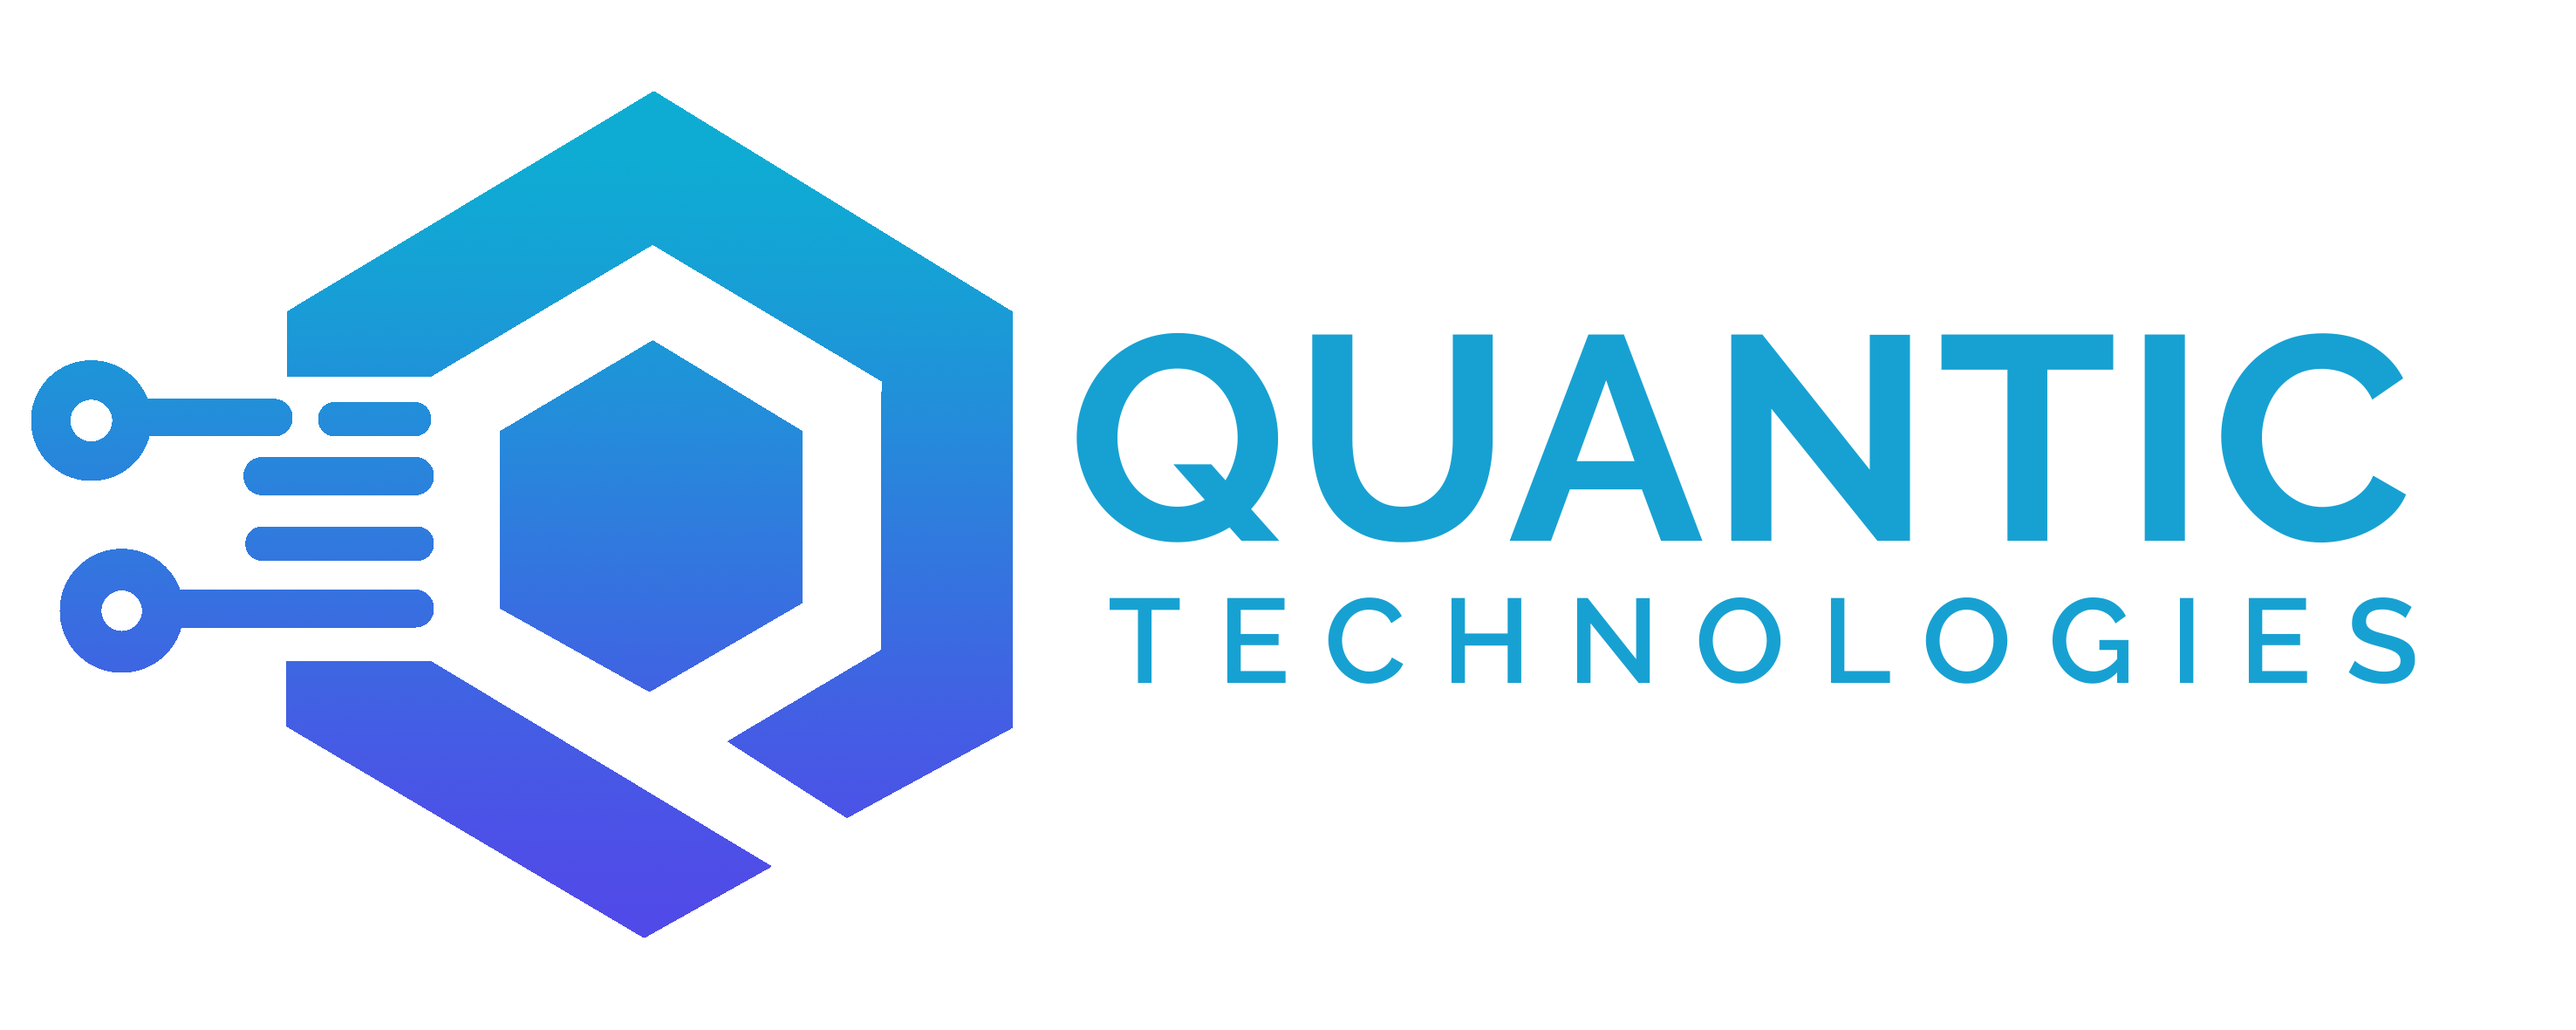 Quantic Technologies